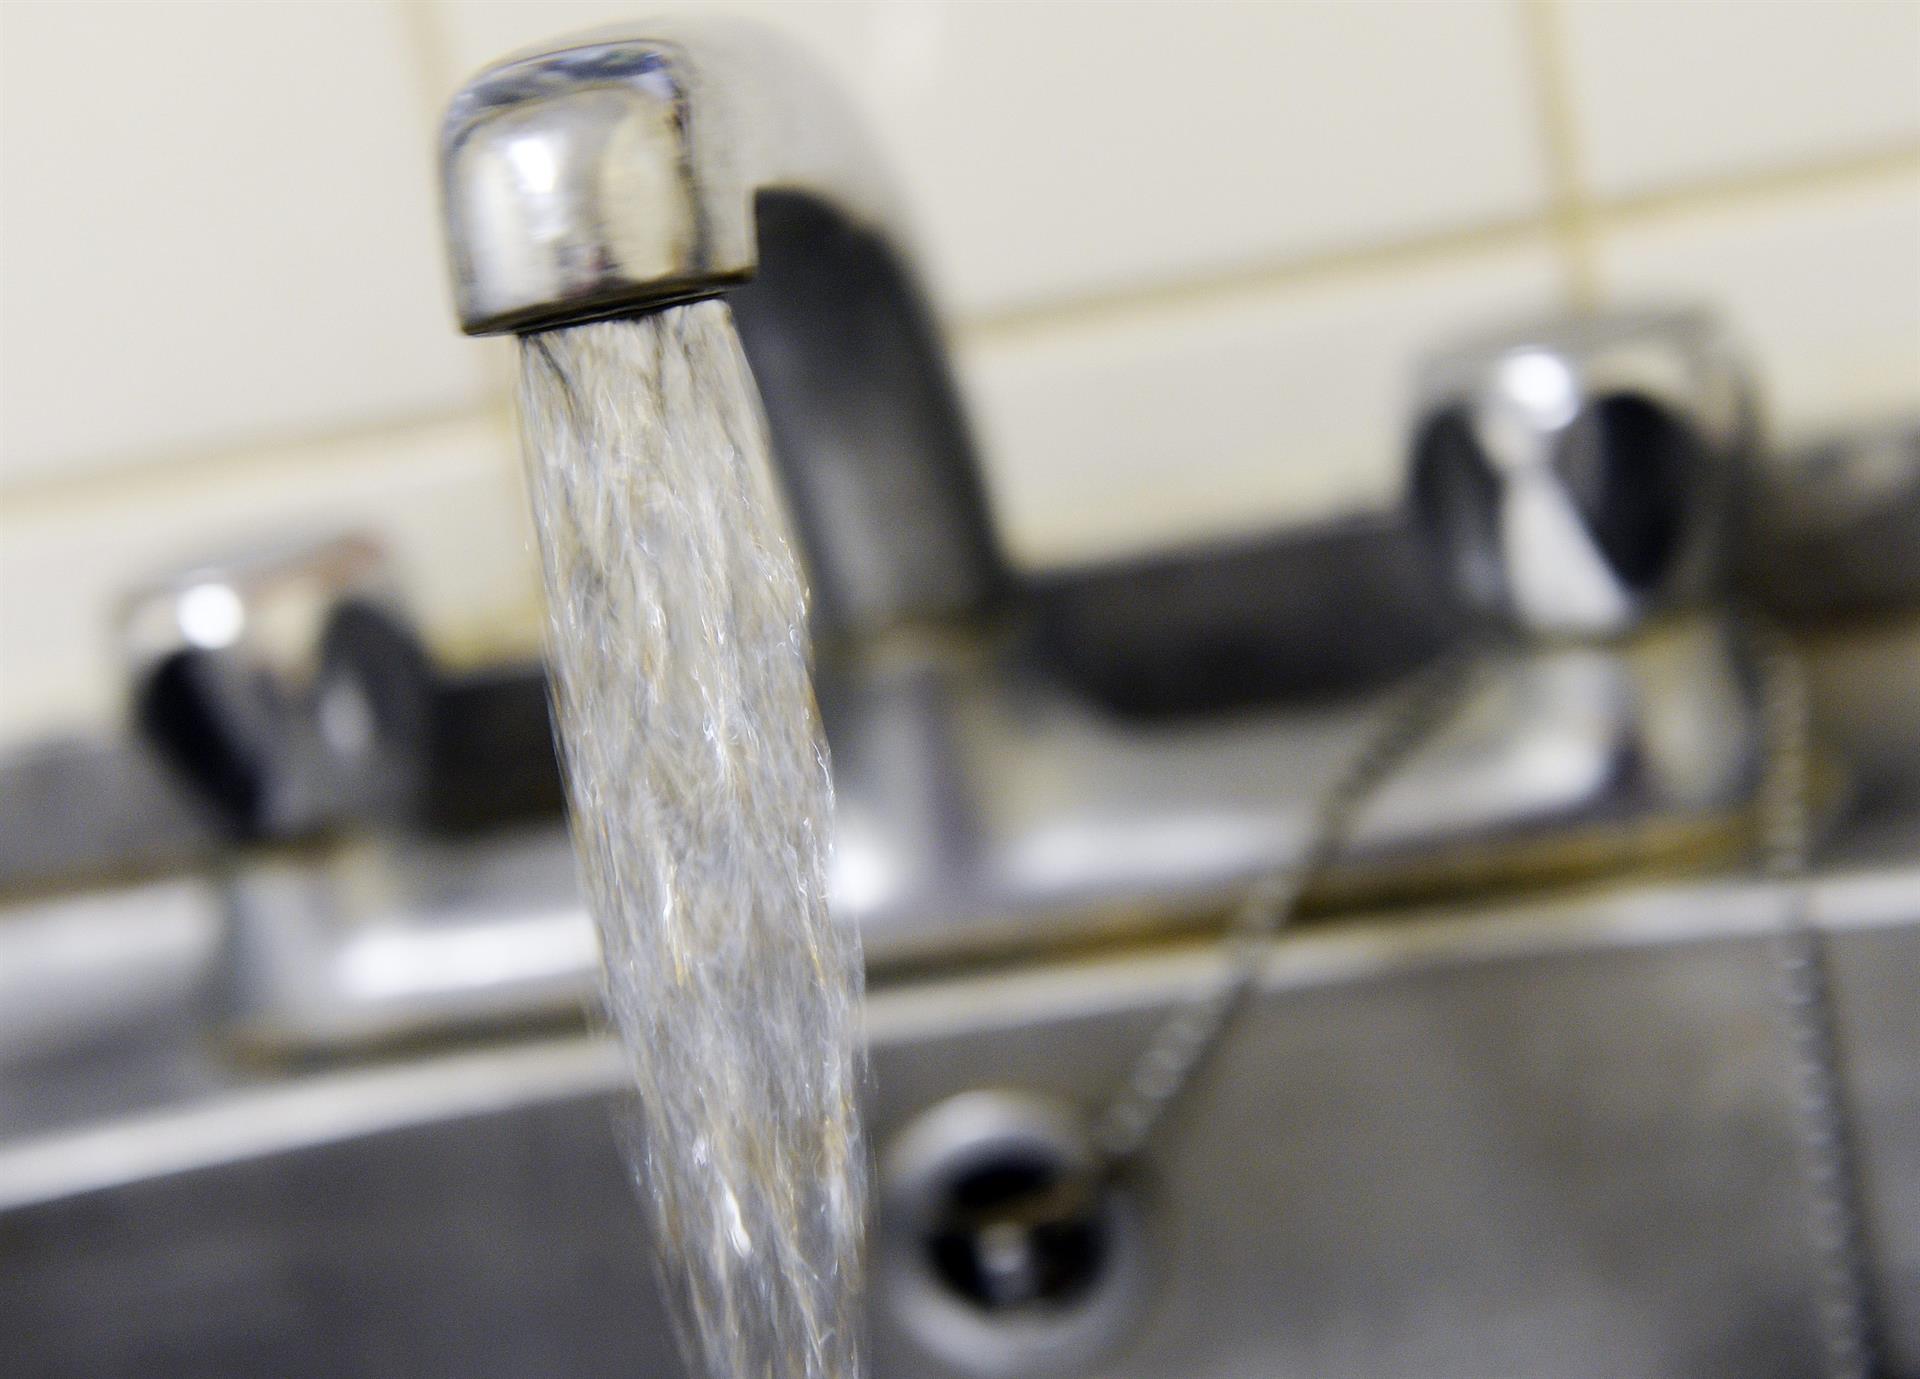 Debido a la falta de agua potable, los vecinos de Jackson no pueden usar el agua del grifo ni para beber, ni para cocinar lavarse los dientes. Imagen de archivo. EFE/ANDY RAIN
